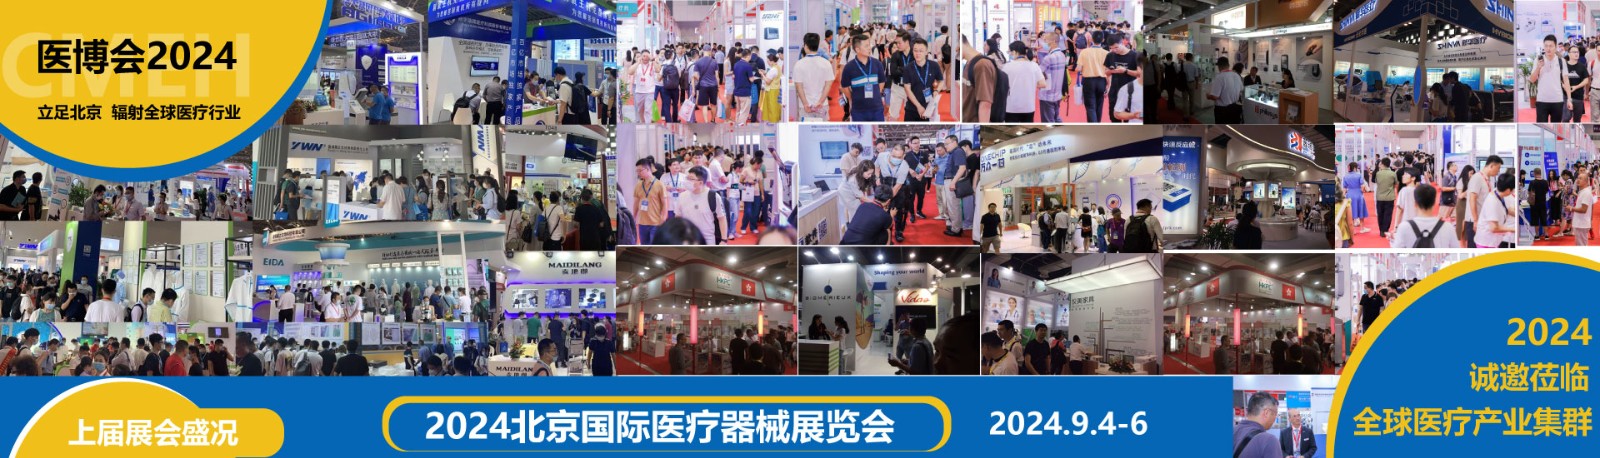 北京国际医疗器械展览会2024年9月4日-6日隆重举办